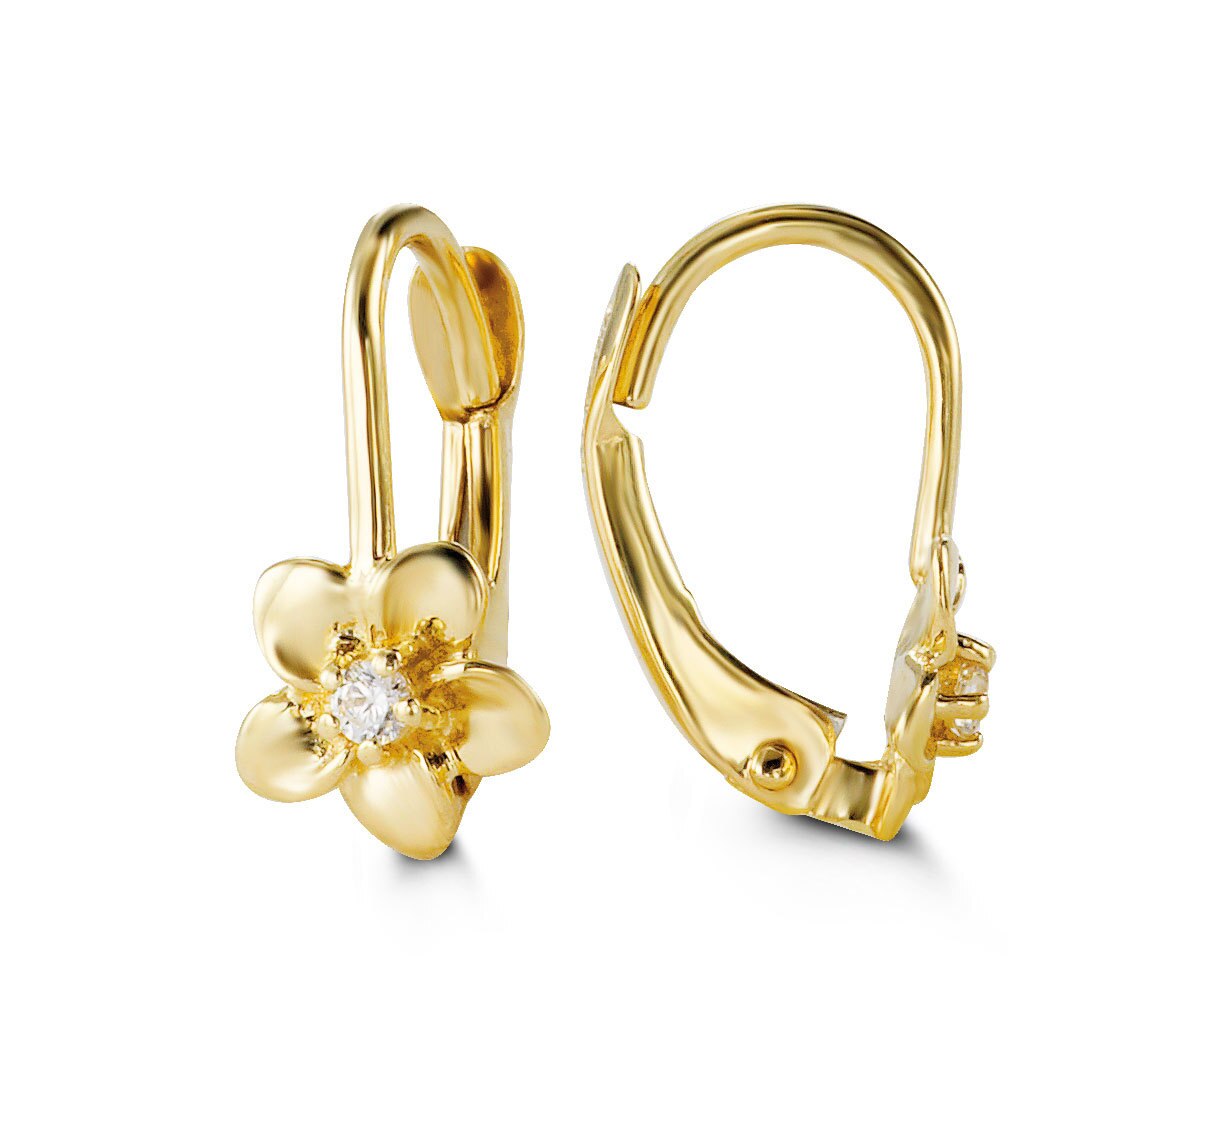 10K Yellow Gold Flower Shape CZ Baby Earrings